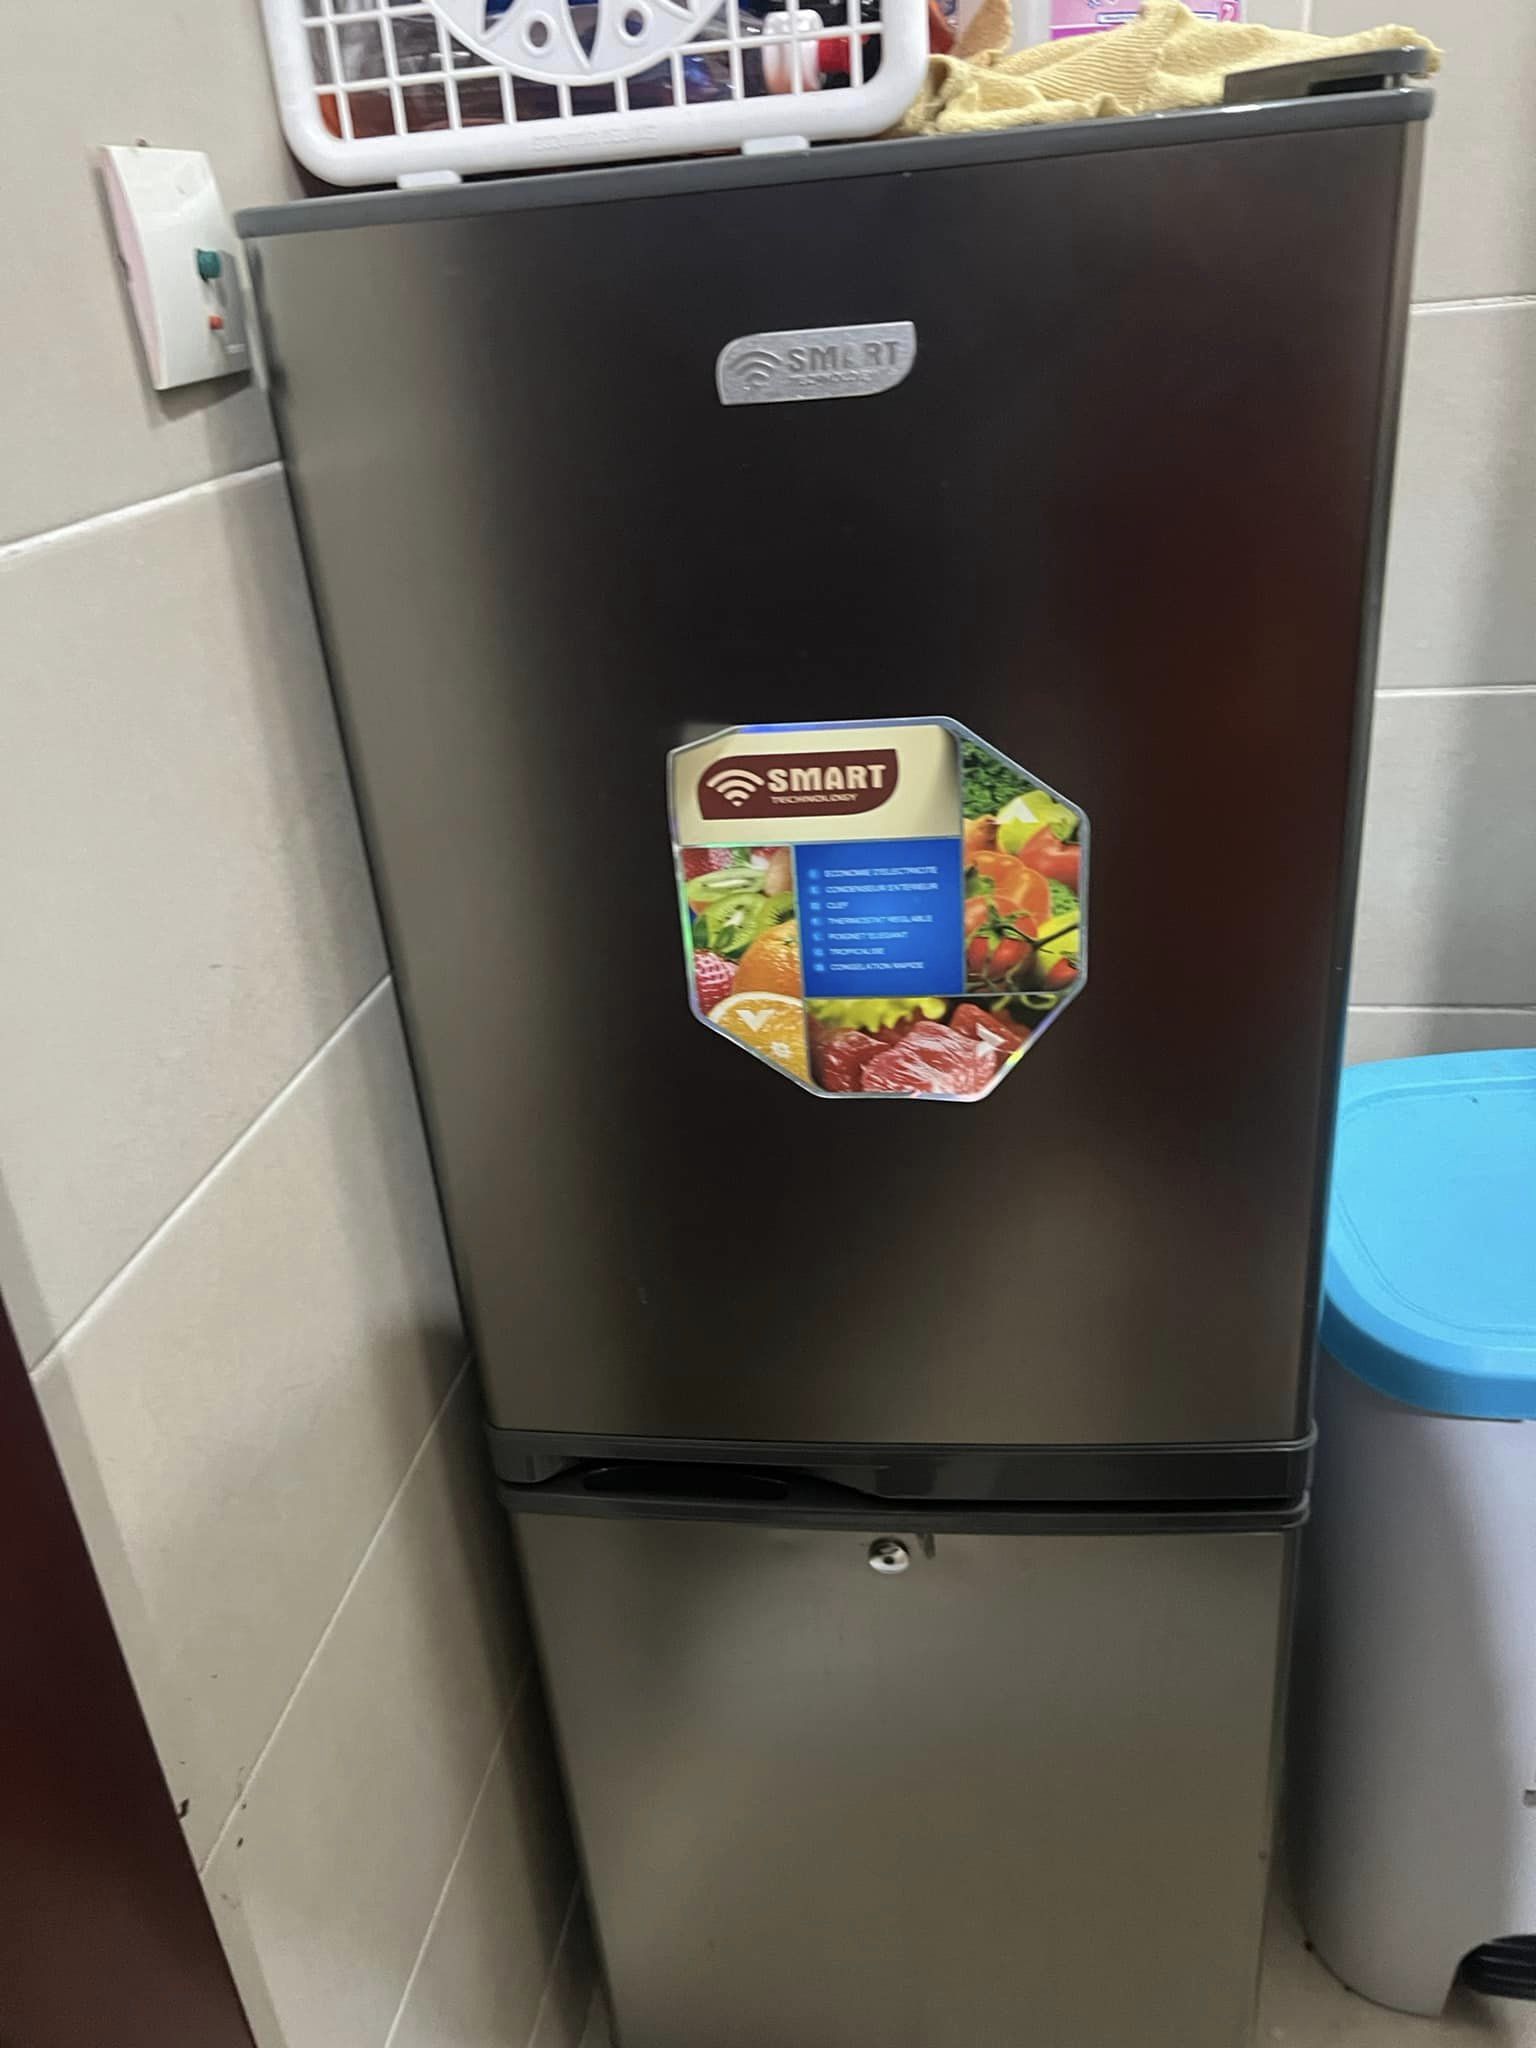 Réfrigérateurs smart couleur gris à brader !